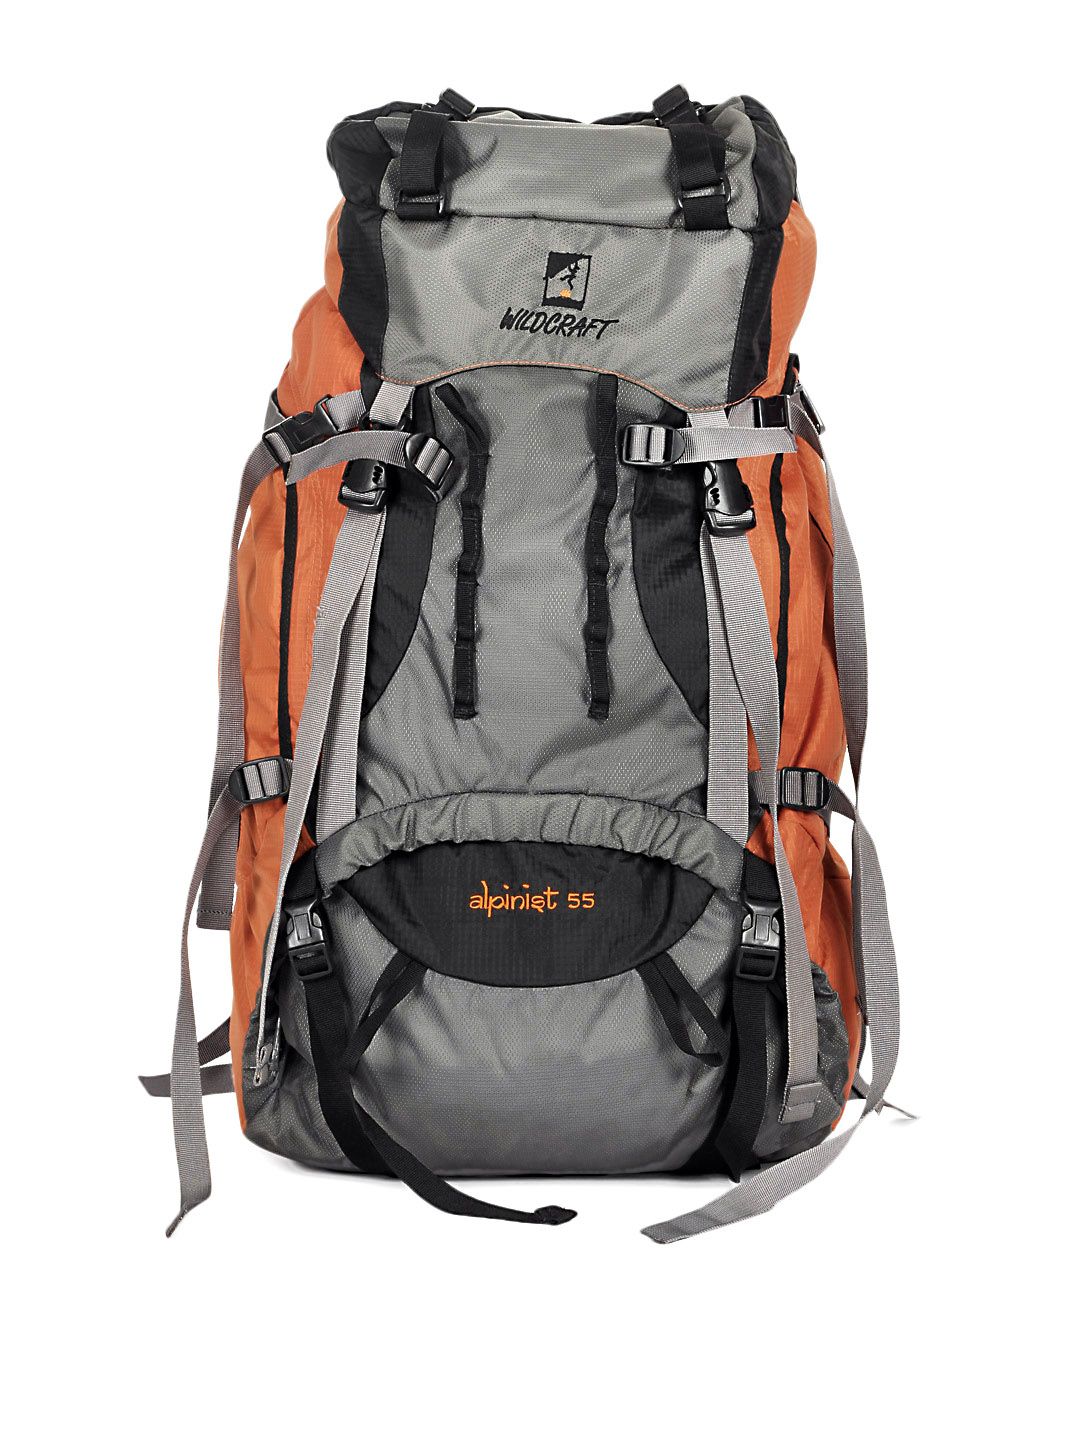 Wildcraft Unisex Orange Alpinist 55 Backpack Price in India